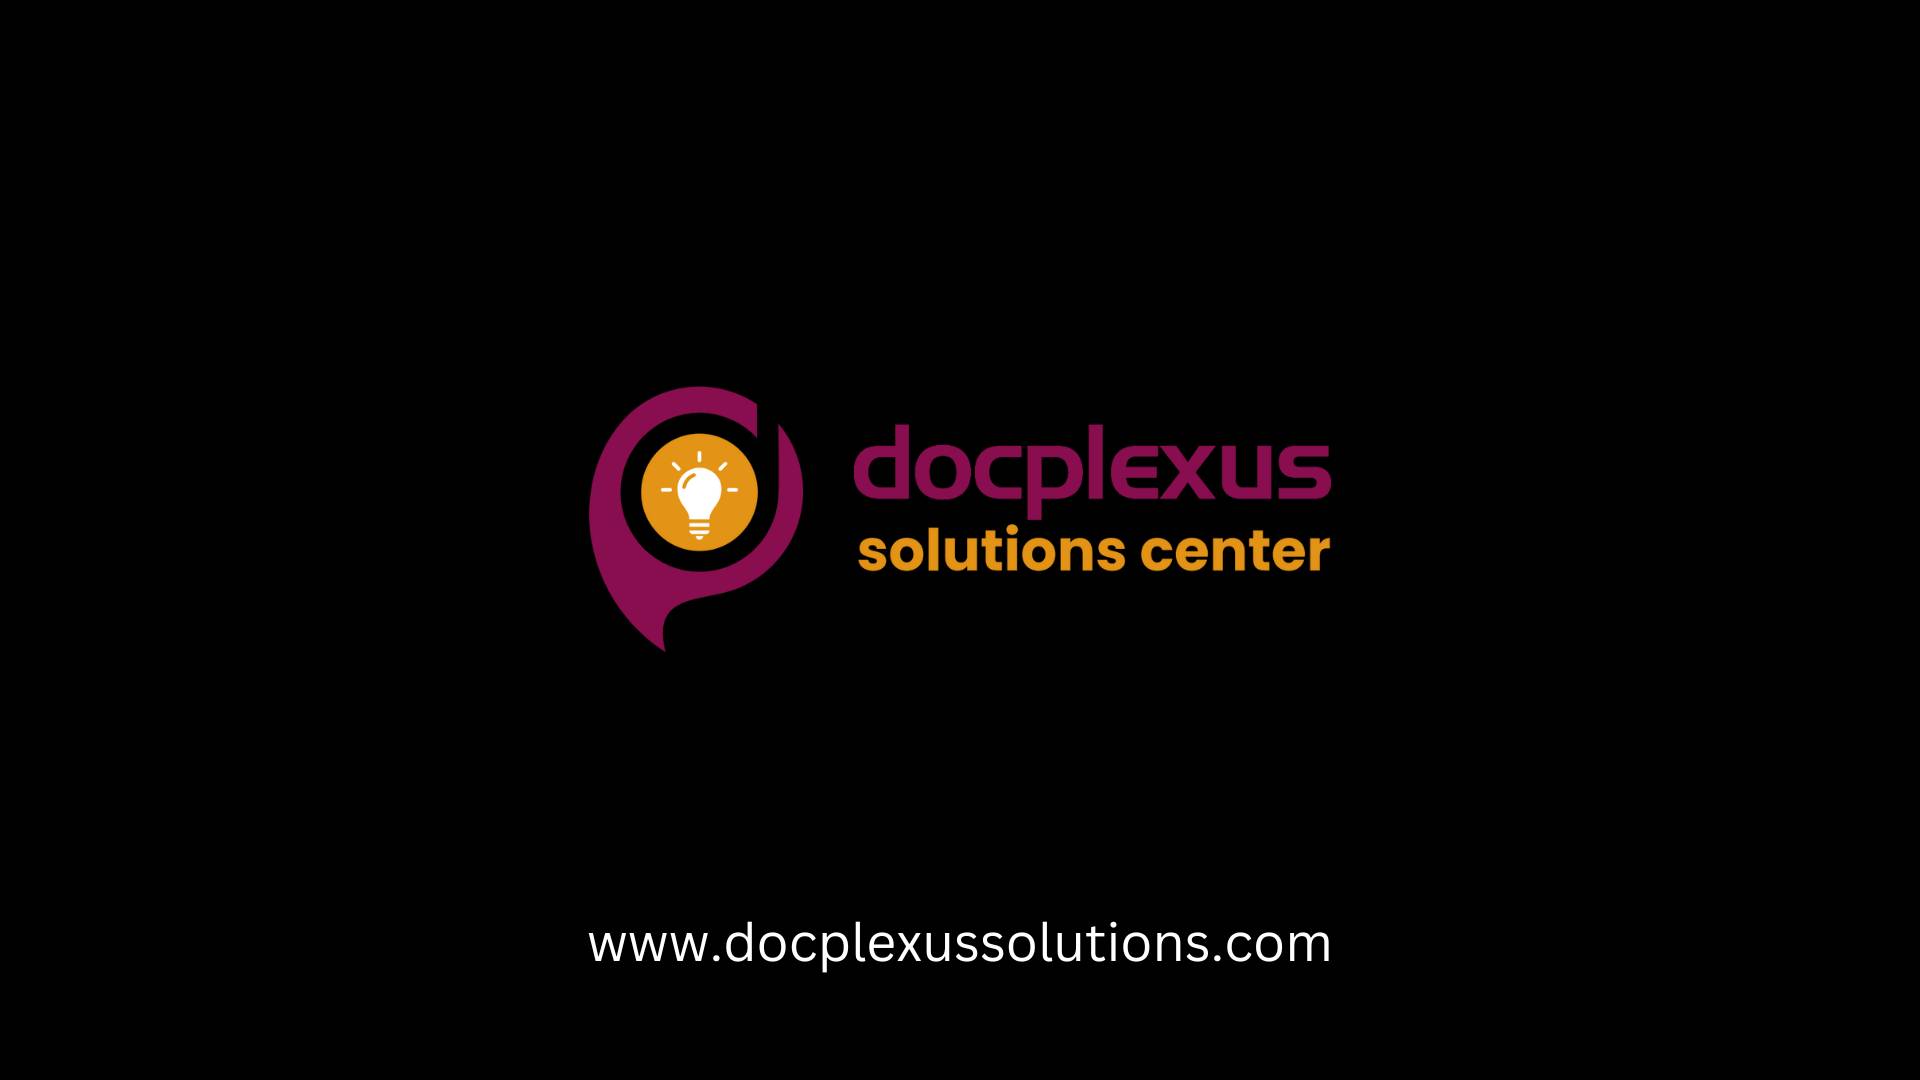 www.docplexussolutions.com